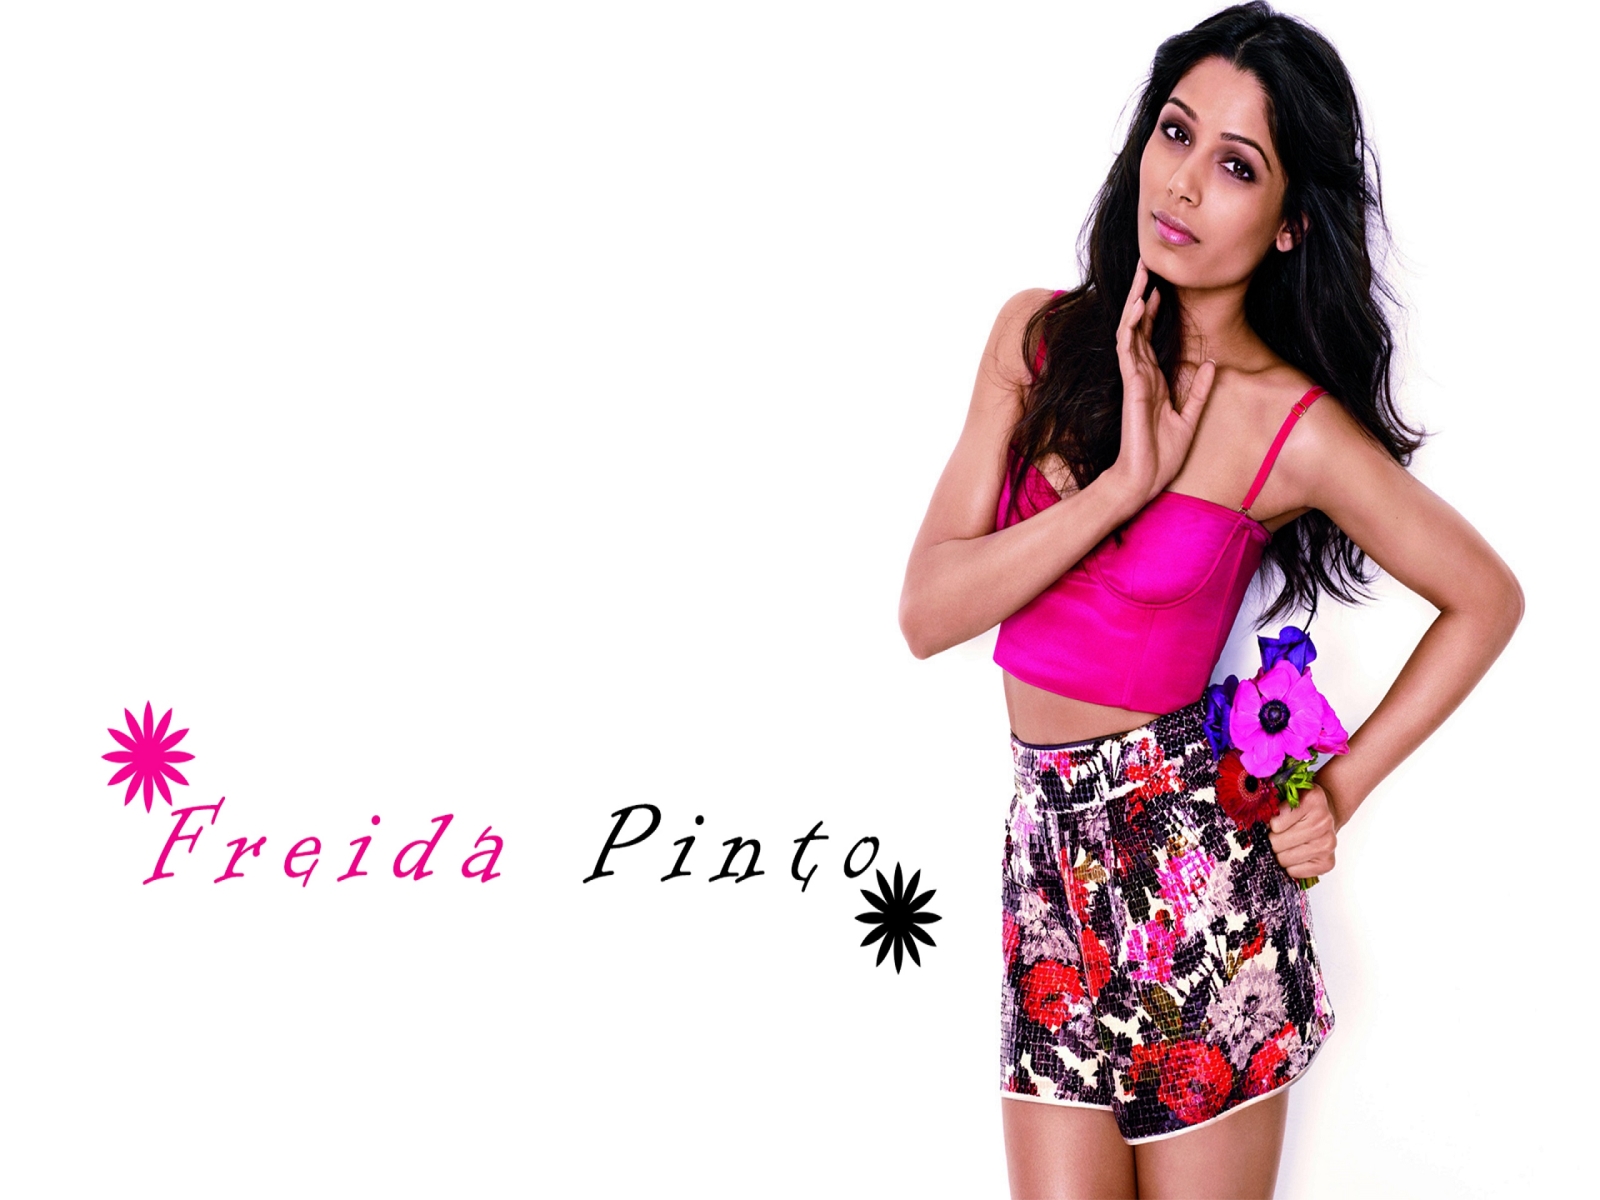 Glamorous Freida Pinto for 1600 x 1200 resolution